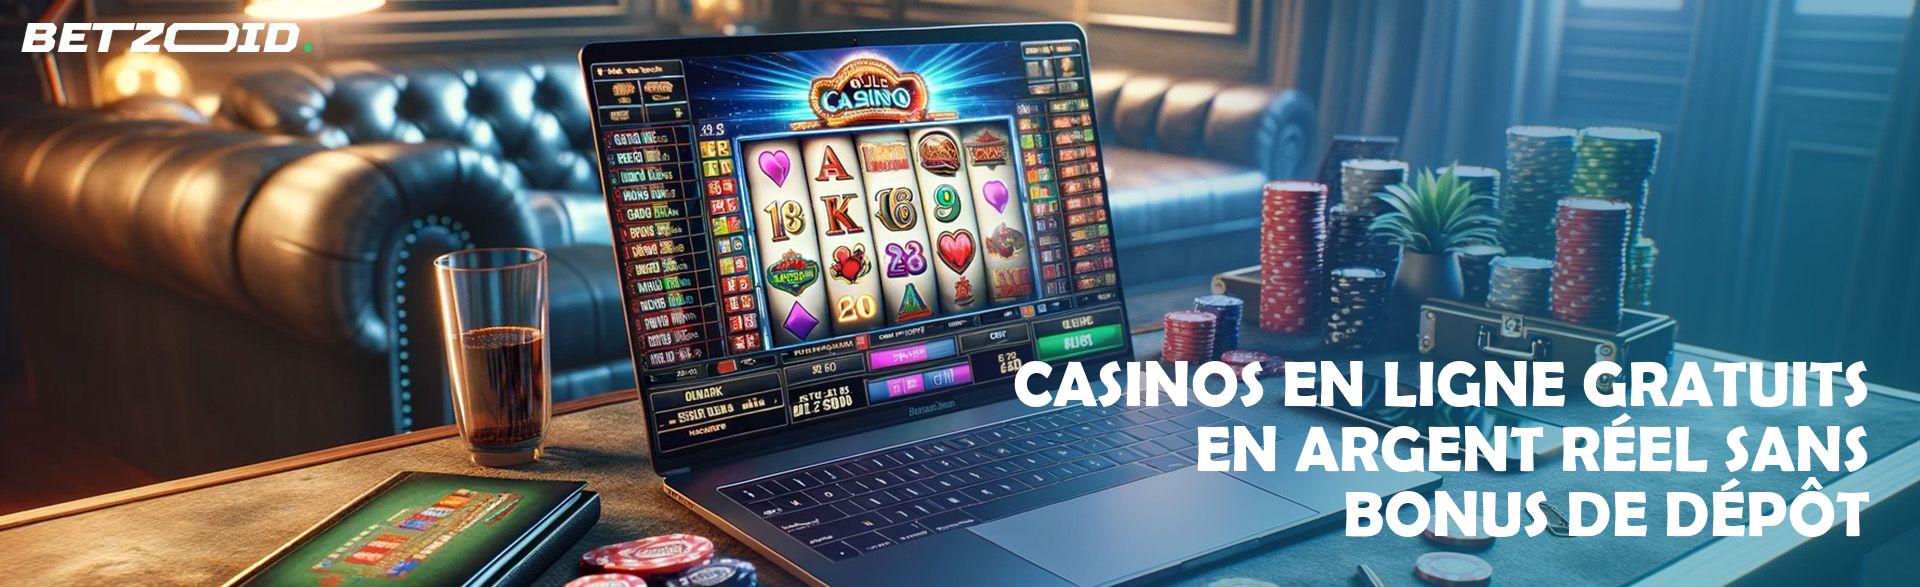 Casinos en Ligne Gratuits en Argent Réel sans Bonus de Dépôt.